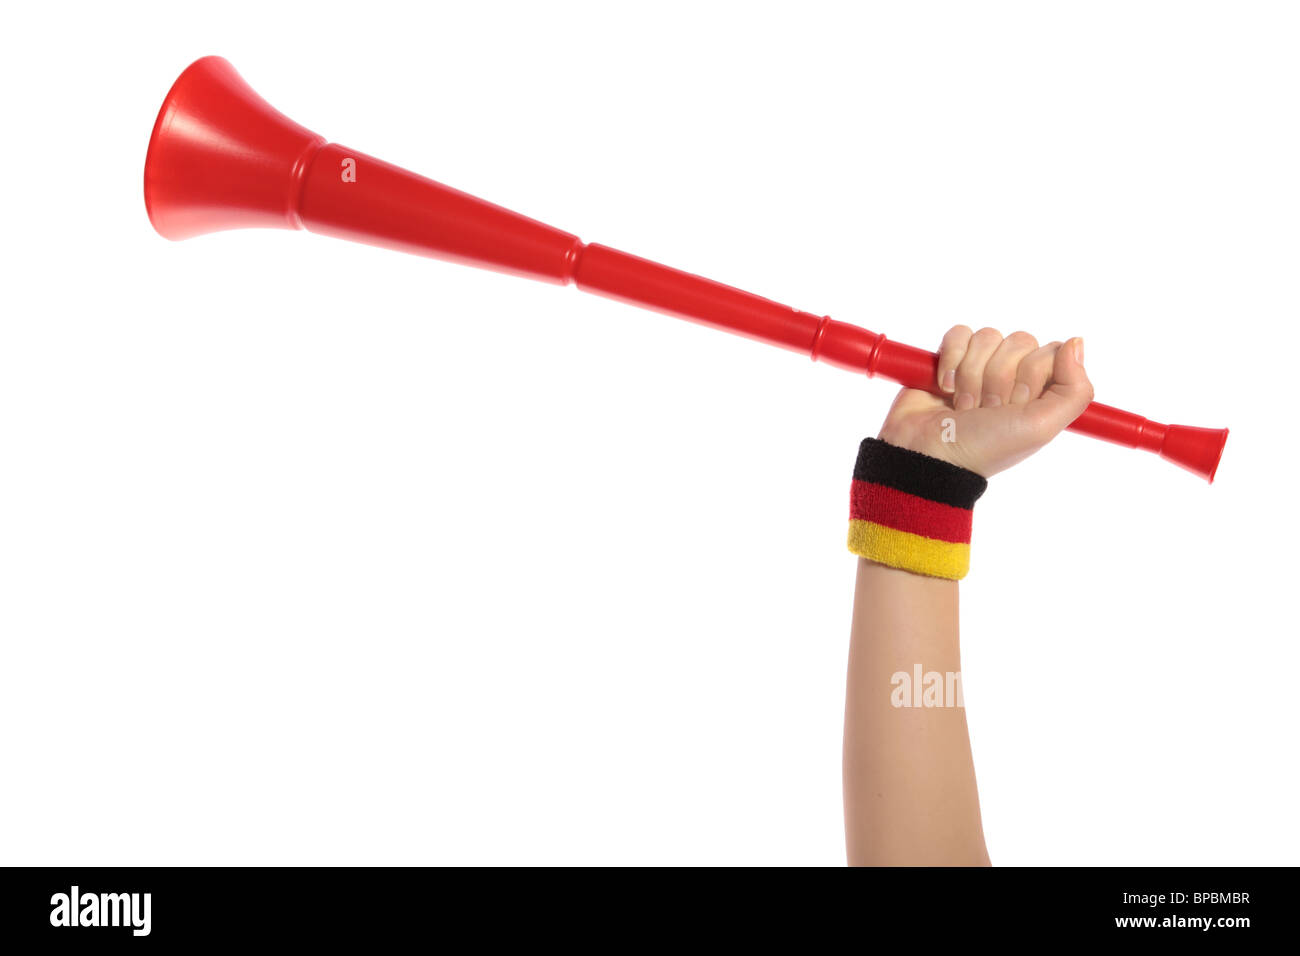 Eine menschliche Hand mit einem Schweißband in deutschen Farben halten eine Vuvuzela, die traditionelle Trompete der südafrikanischen Fans Stockfoto